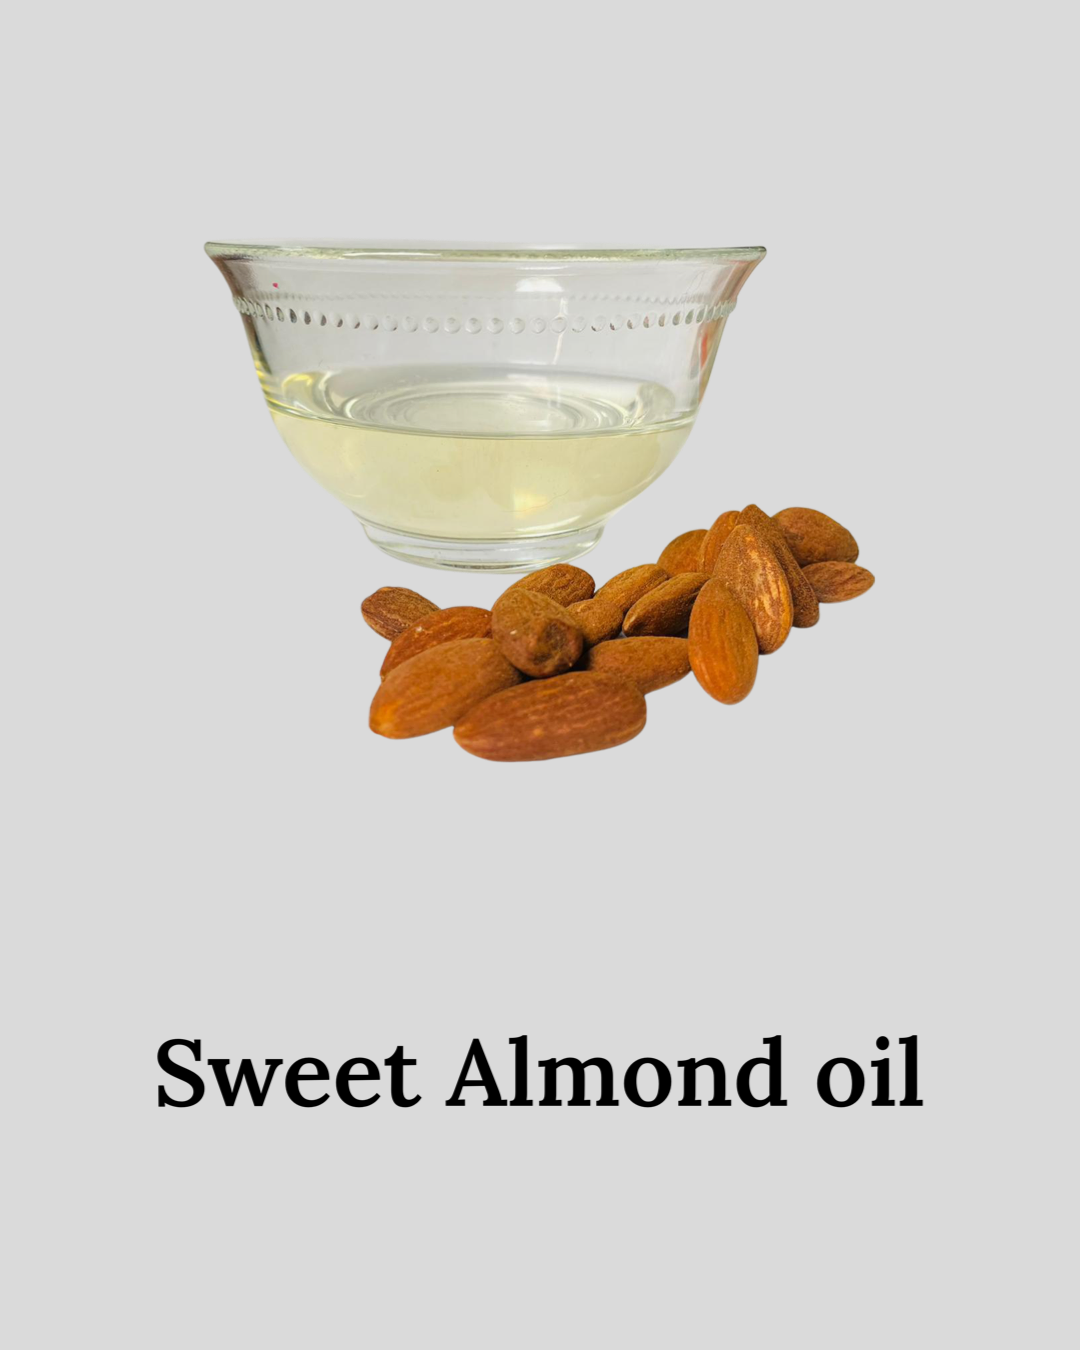 Sweet Almond oil